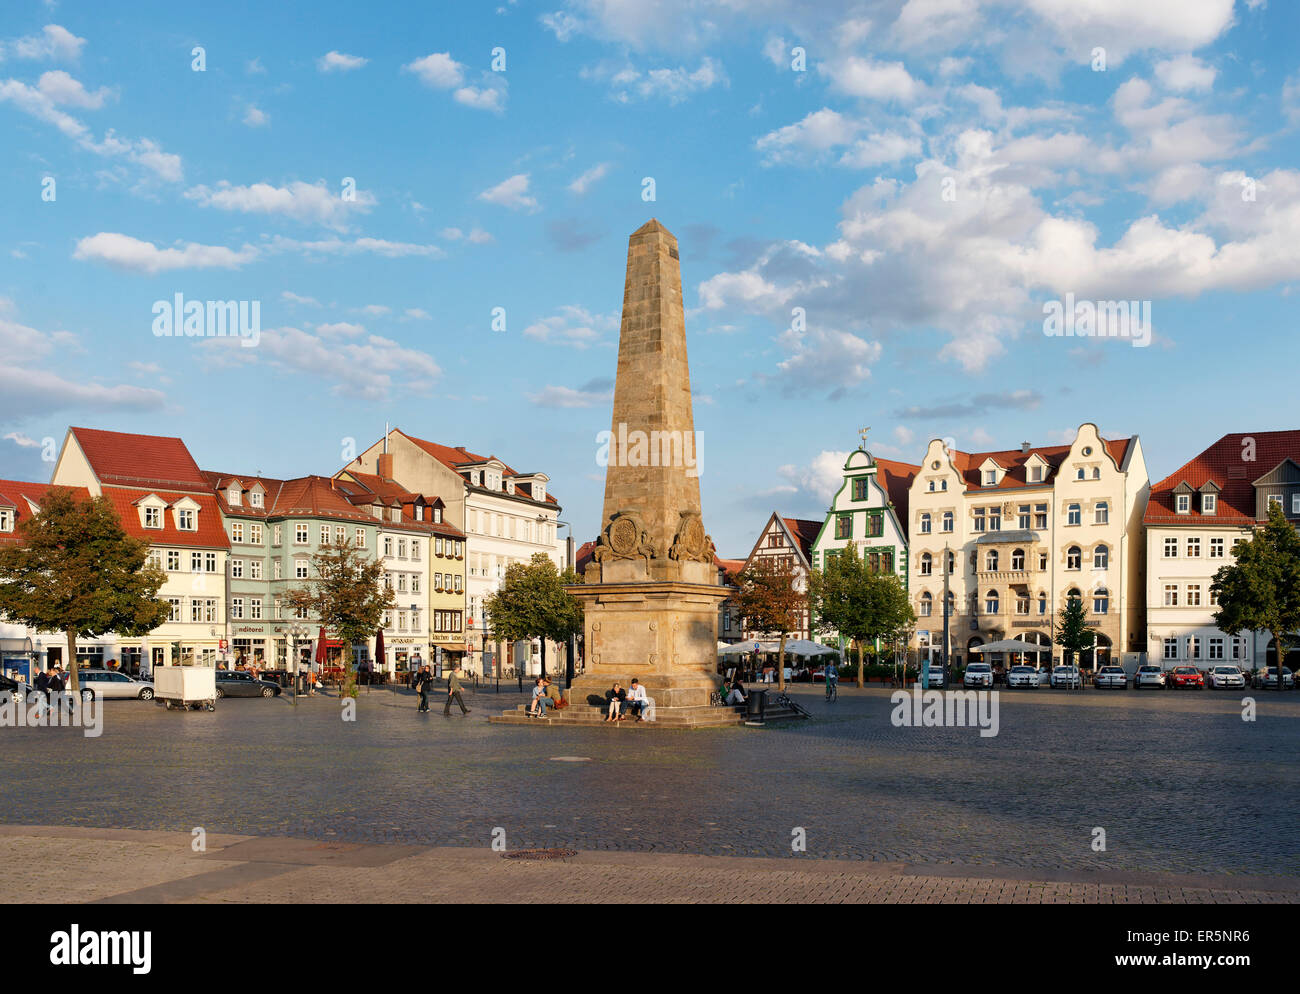 Place de la cathédrale, Domplatz, Erfurt, Thuringe, Allemagne Banque D'Images